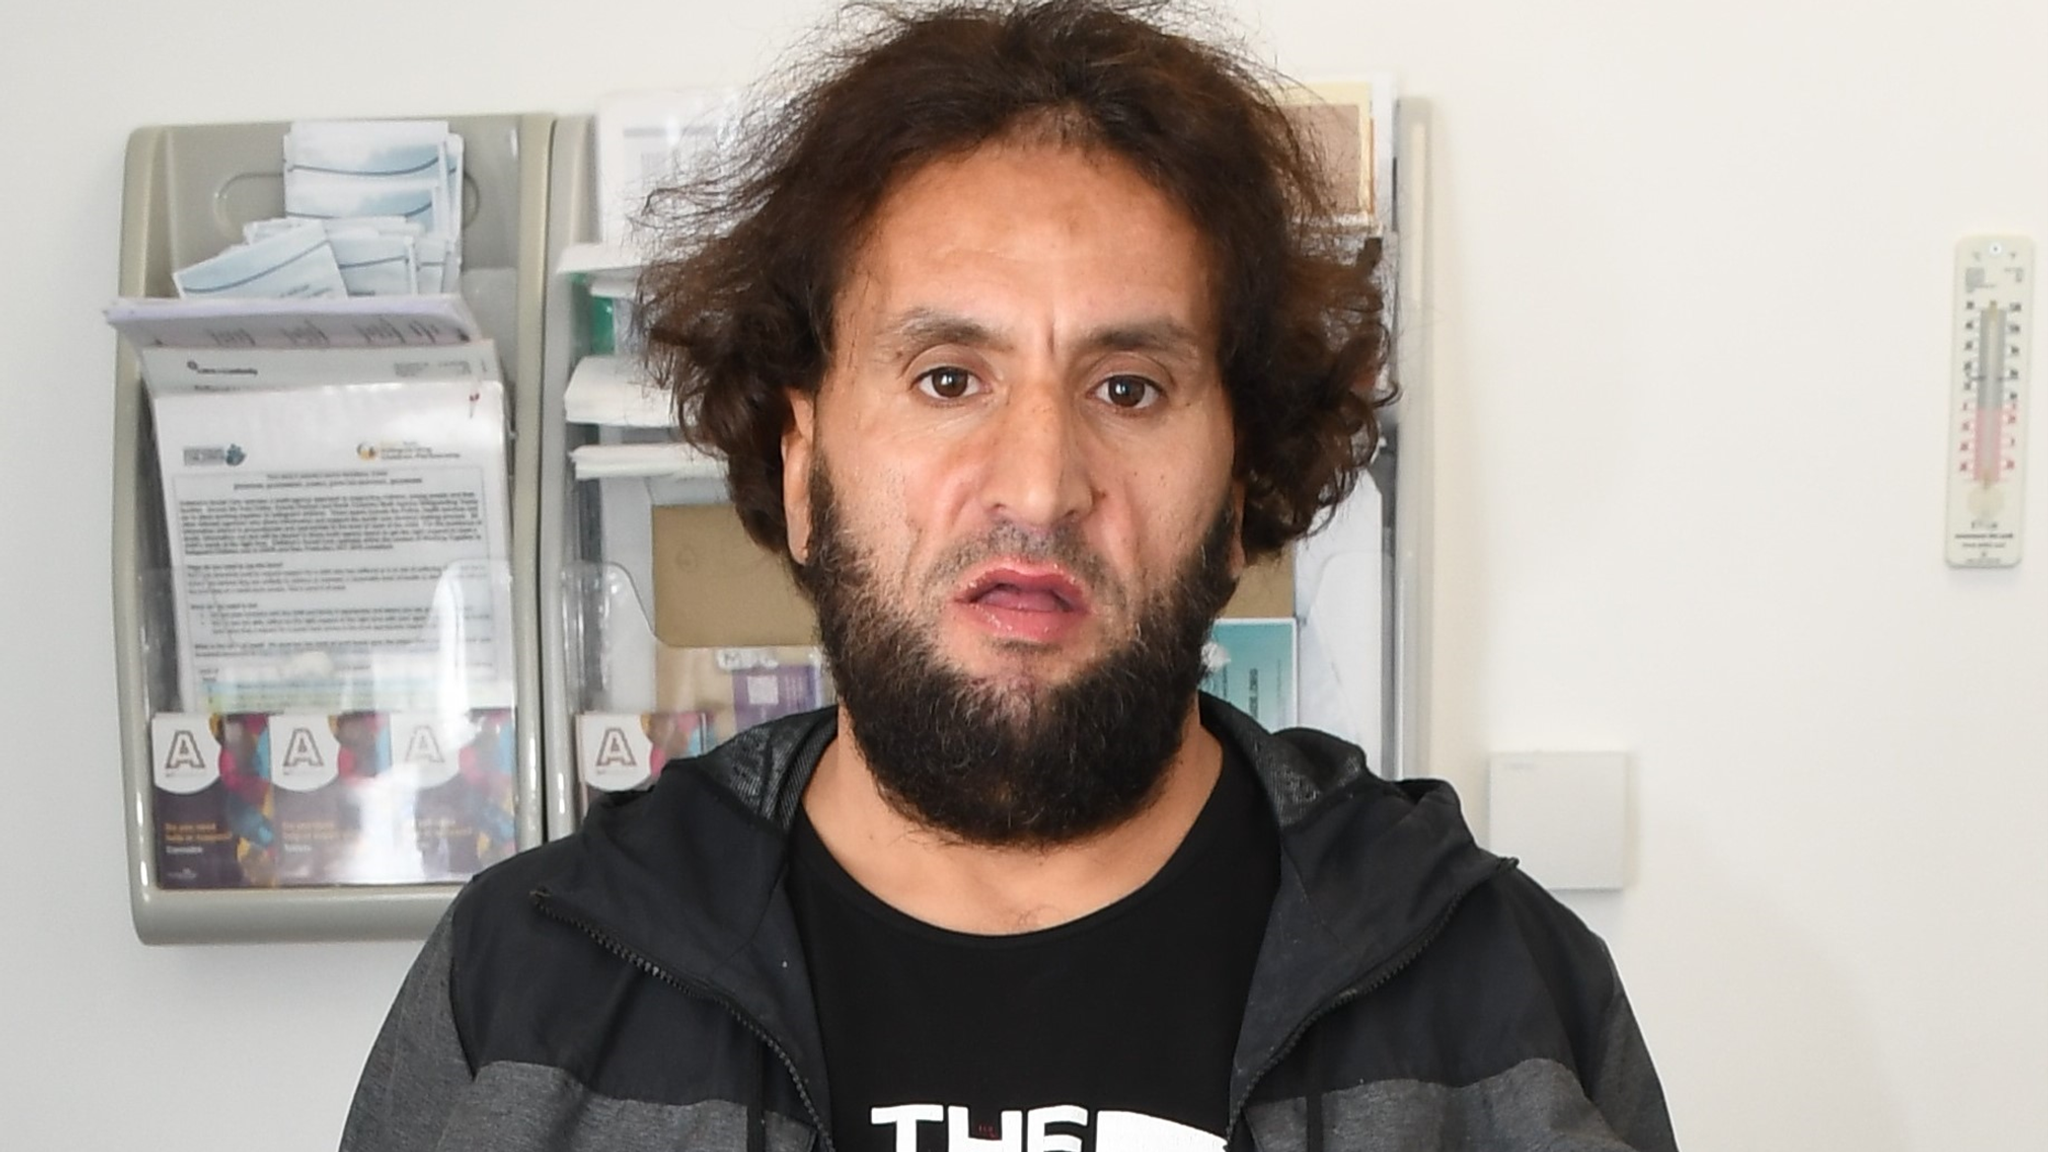 Elítélték a Marokkói bevándorlót, aki agyonszúrt egy szembejövő angol férfit | Szombat Online